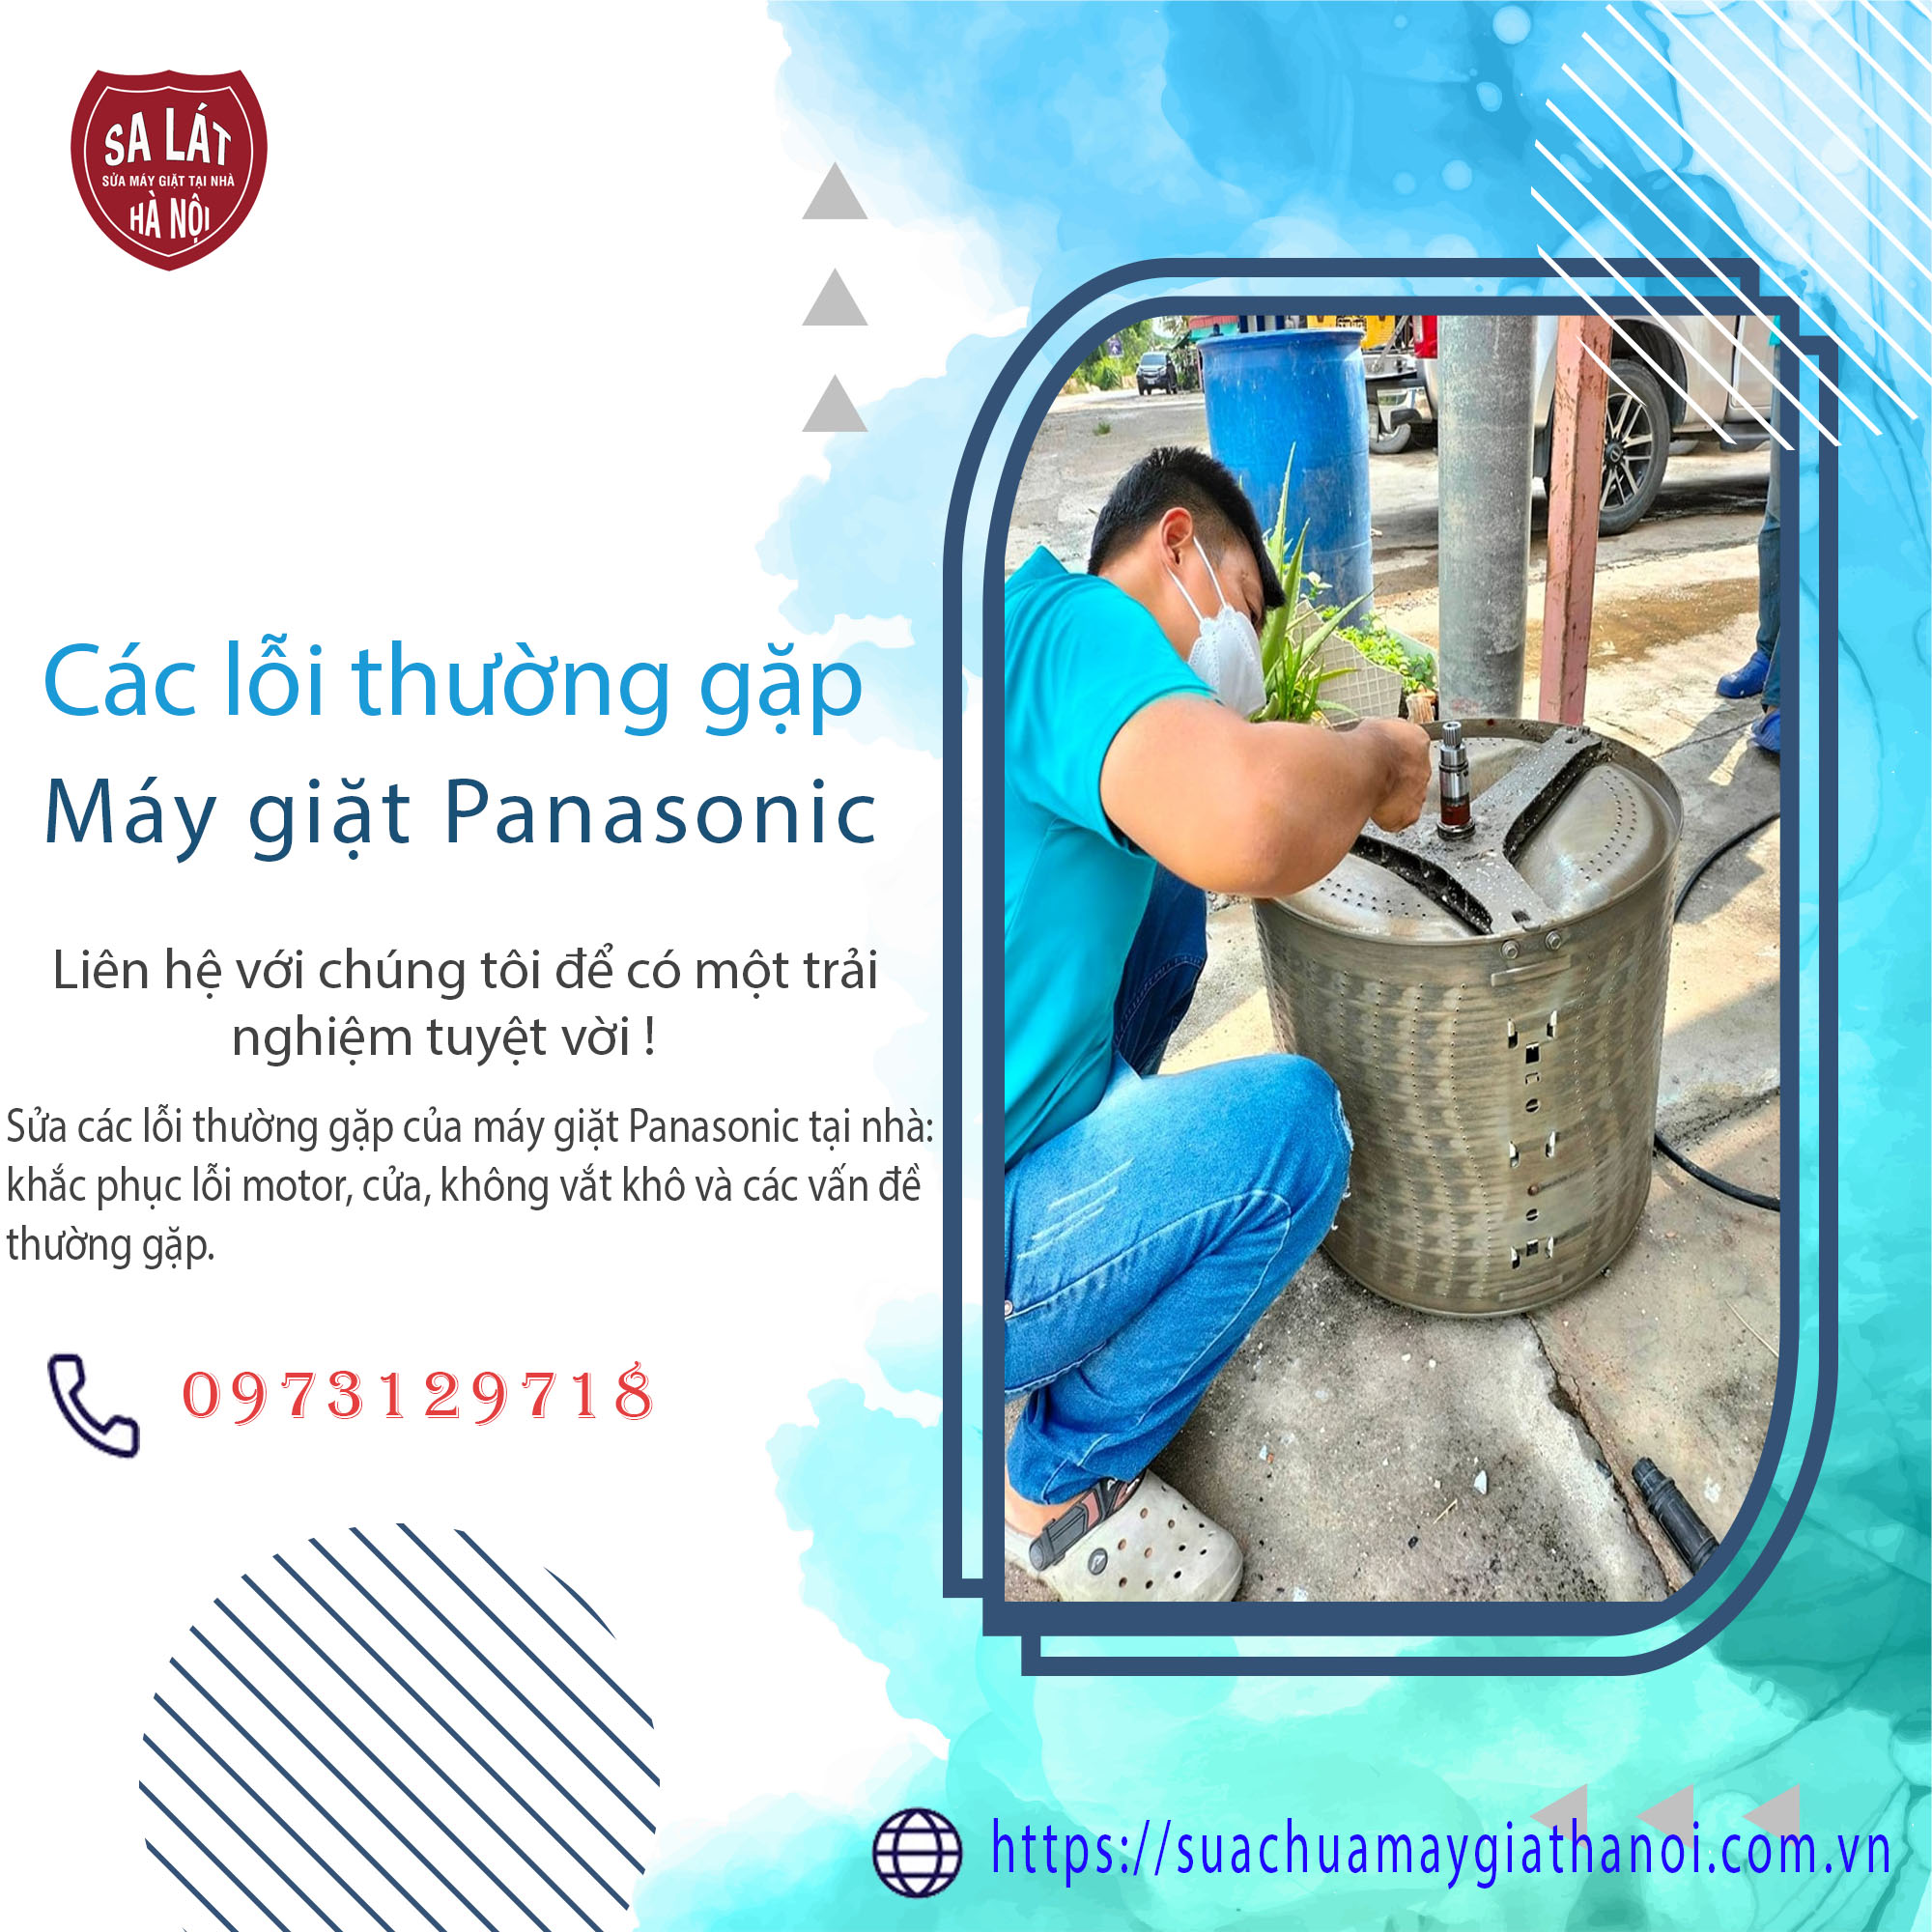 Huong Dan Sua Cac Loi Thuong Gap Cua May Giat Panasonic Tai Nha